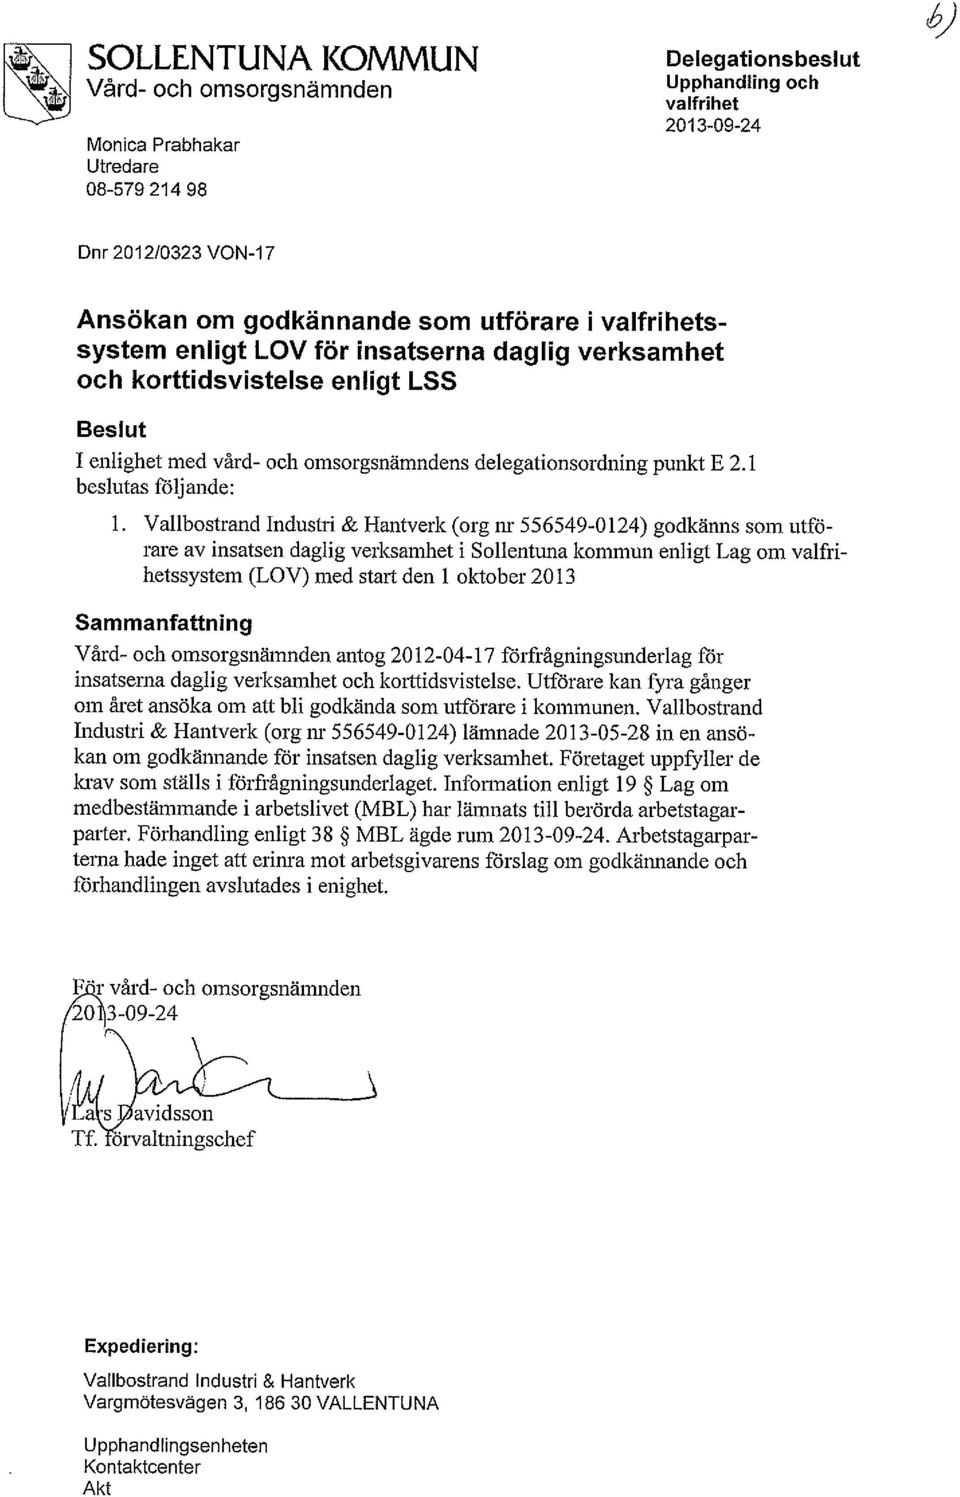 Vallbostrand Industri & Hantverk (org nr 556549-0124) godkänns som utförare av insatsen daglig verksamhet i Sollentuna kommun enligt Lag om valfrihetssystem (LOV) med start den 1 oktober 2013